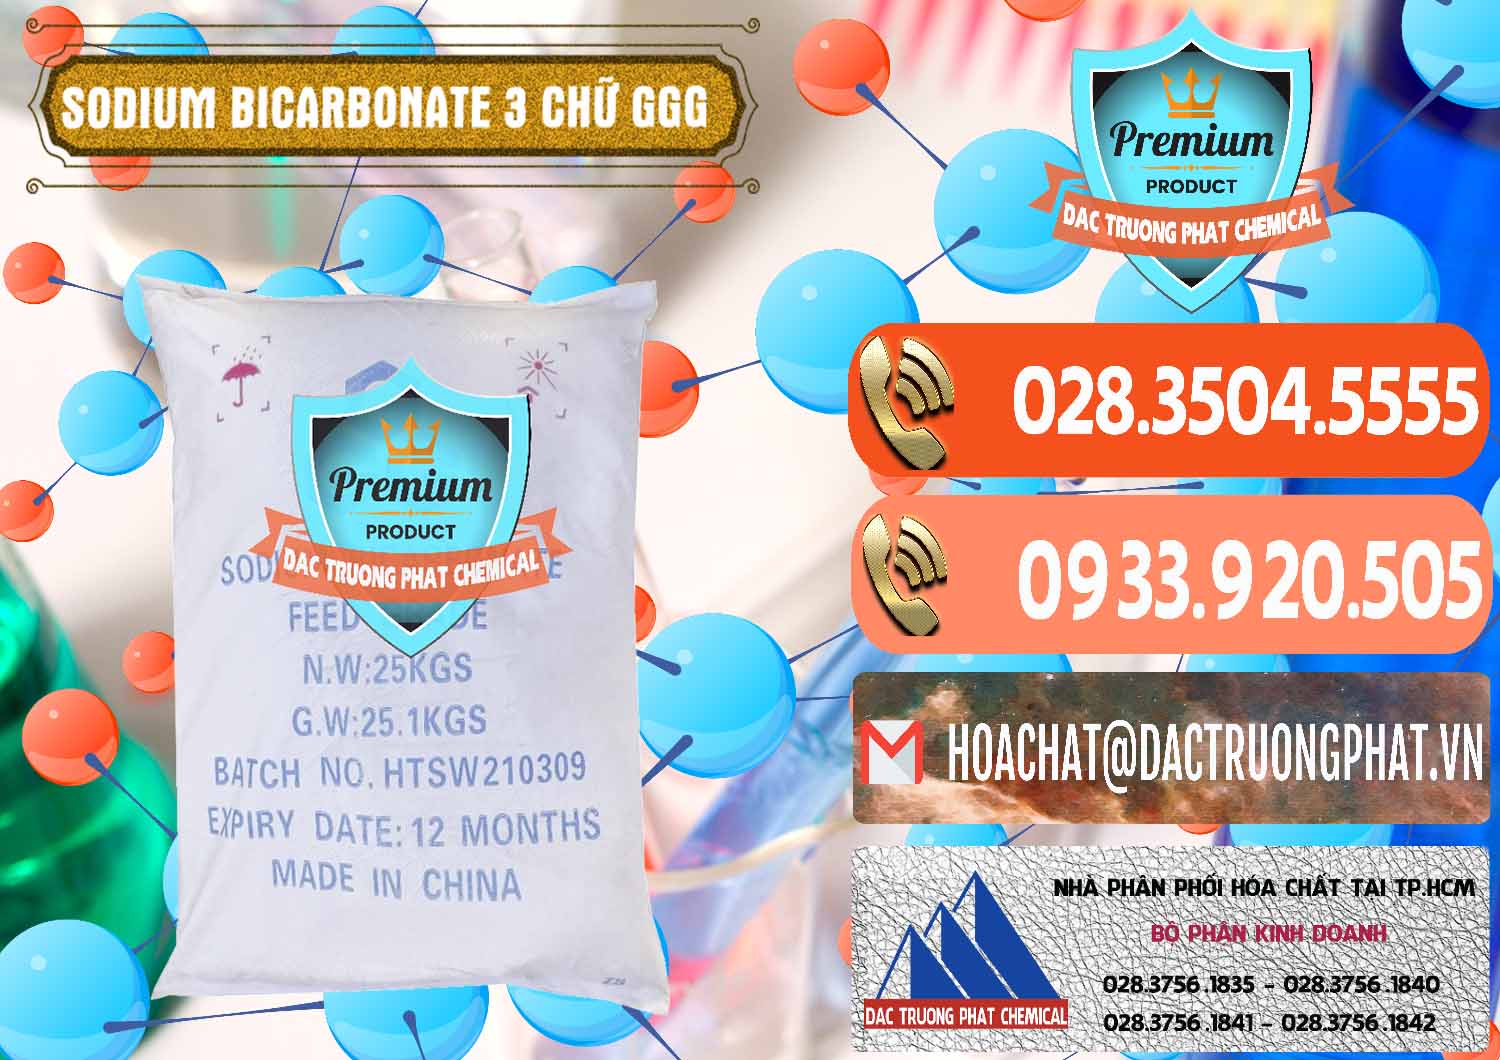 Cty chuyên cung cấp _ bán Sodium Bicarbonate – Bicar NaHCO3 Food Grade 3 Chữ GGG Trung Quốc China - 0259 - Nơi chuyên kinh doanh và phân phối hóa chất tại TP.HCM - hoachatmientay.com